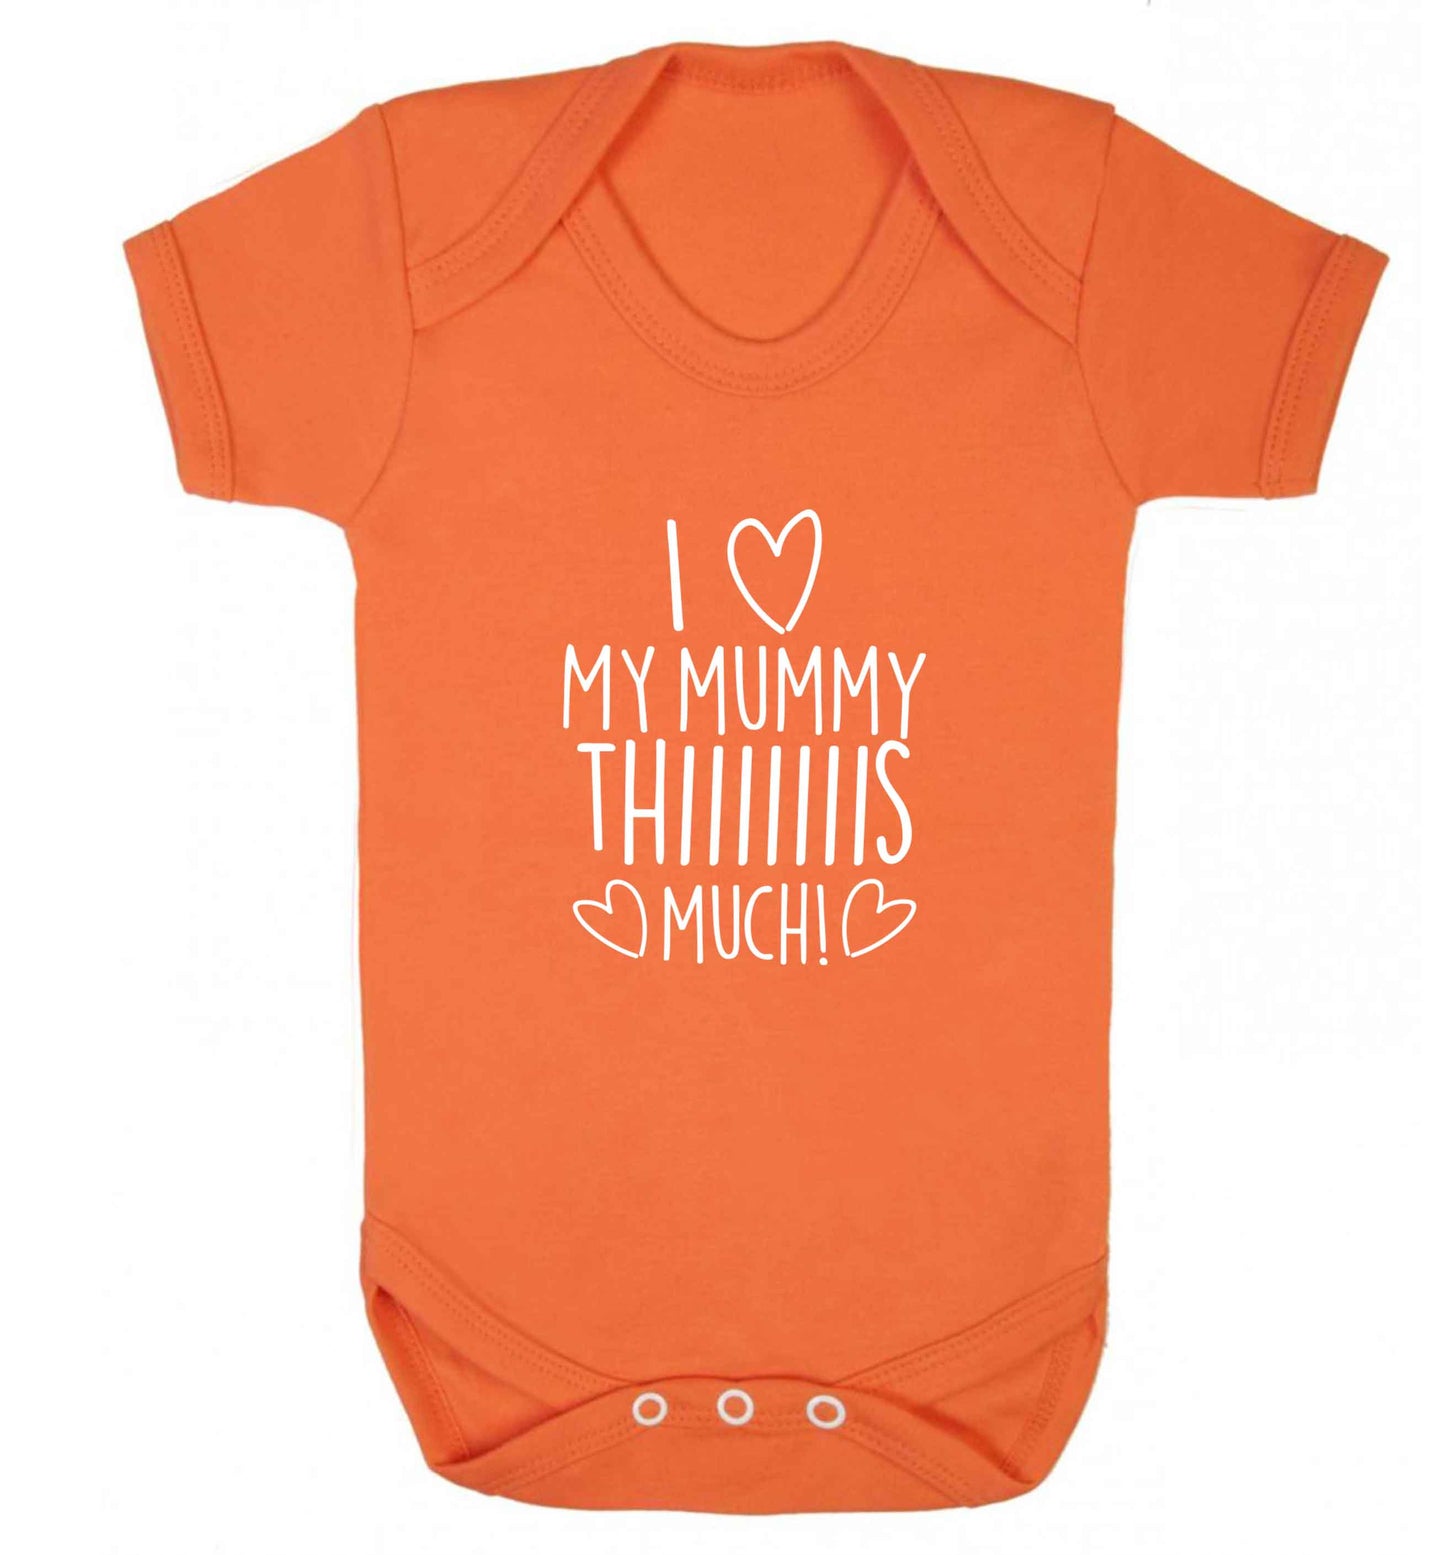 I love my mummy thiiiiis much! baby vest orange 18-24 months